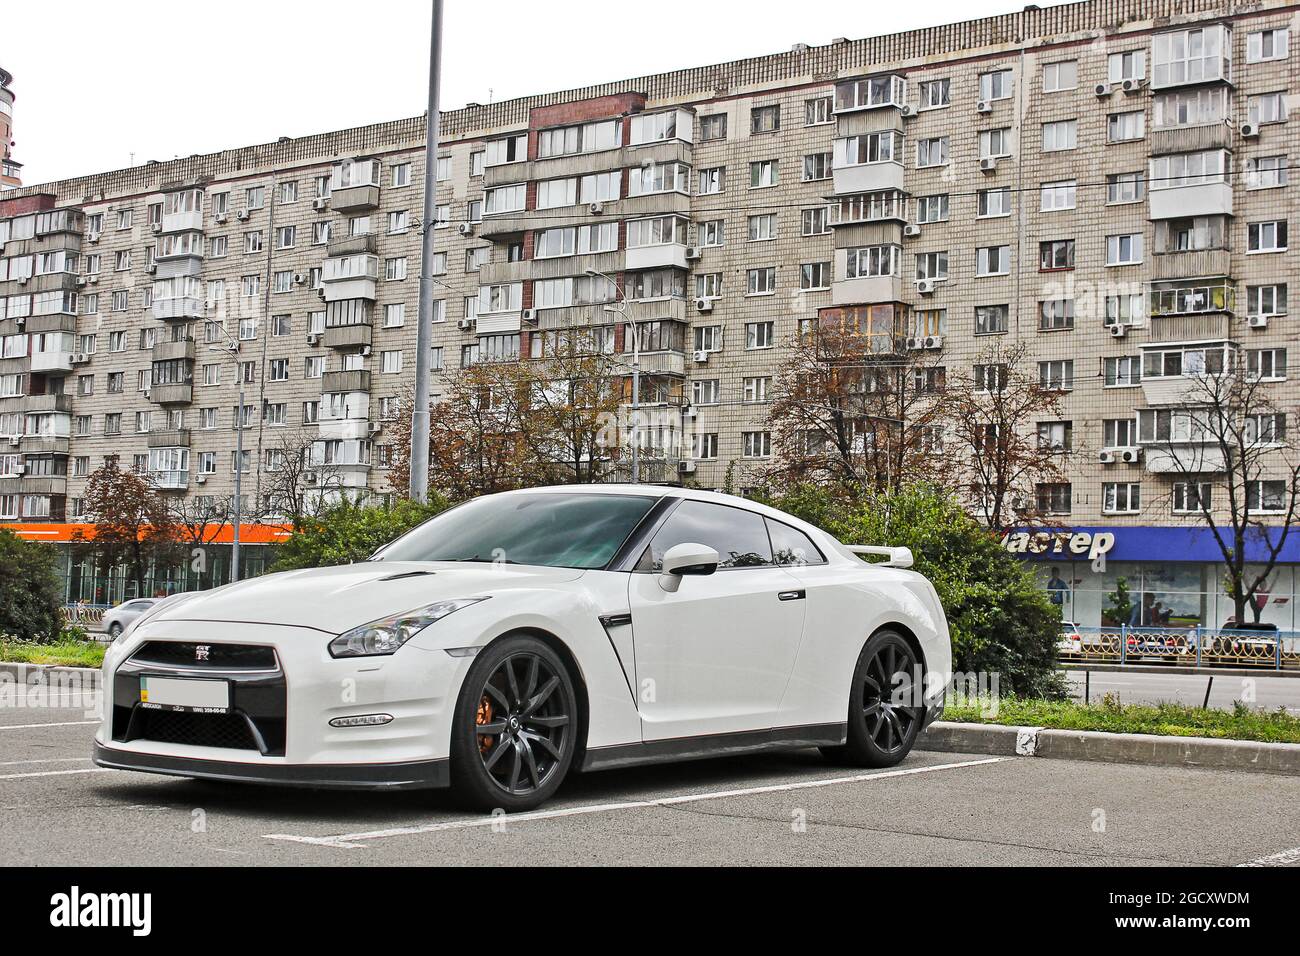 Kiew, Ukraine - 2. September 2017: Japanischer Supersportwagen in der Stadt. Weißer Nissan GTR R35 Nissan auf dem Hintergrund des Hauses Stockfoto